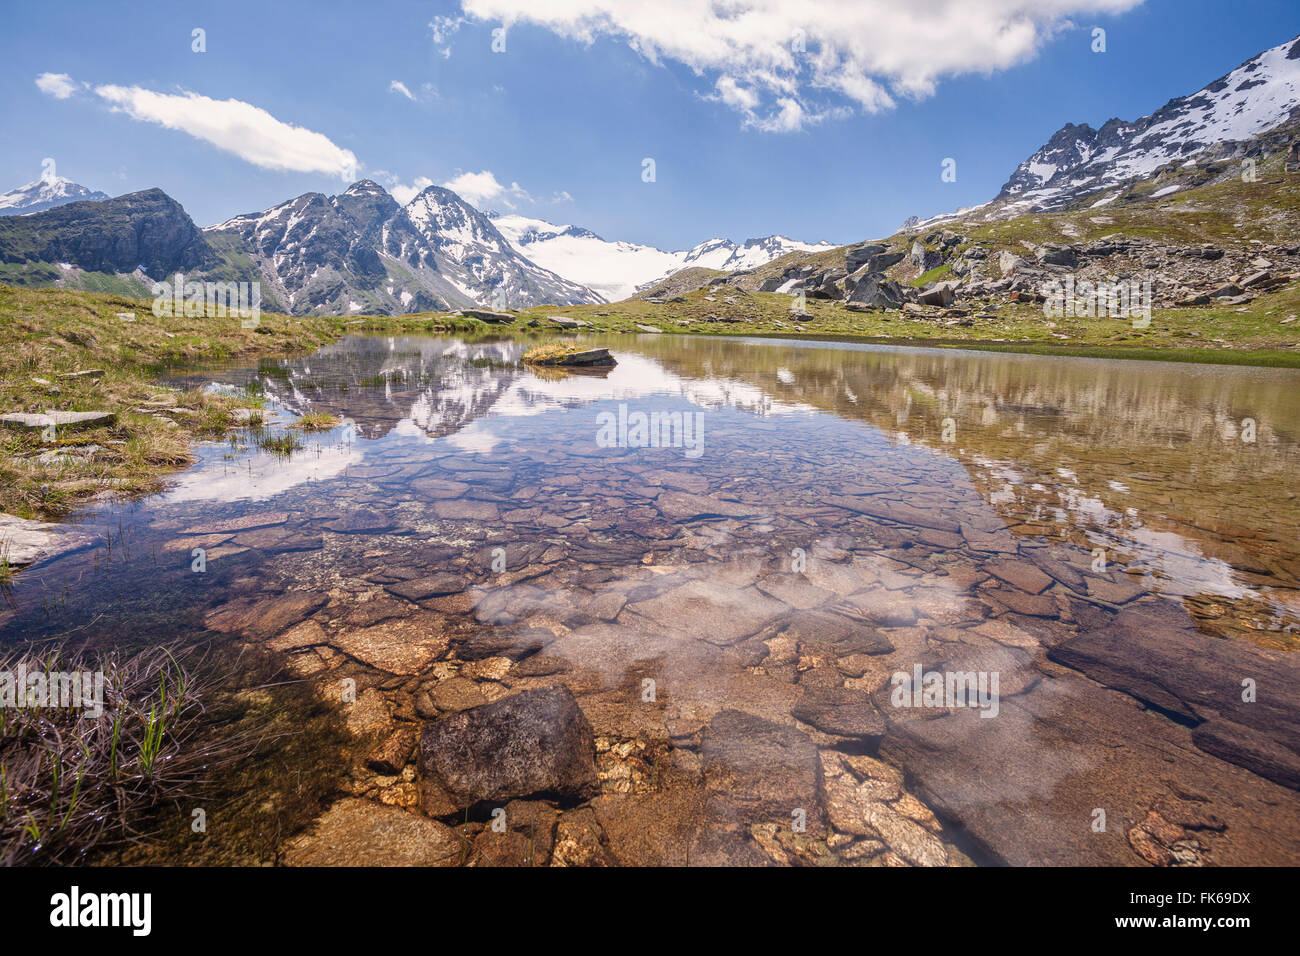 Die schneebedeckten Gipfel spiegeln sich in dem klaren Wasser des Sees Piz La Margna, Fedoz Tal, Engadin, Schweiz, Europa Stockfoto